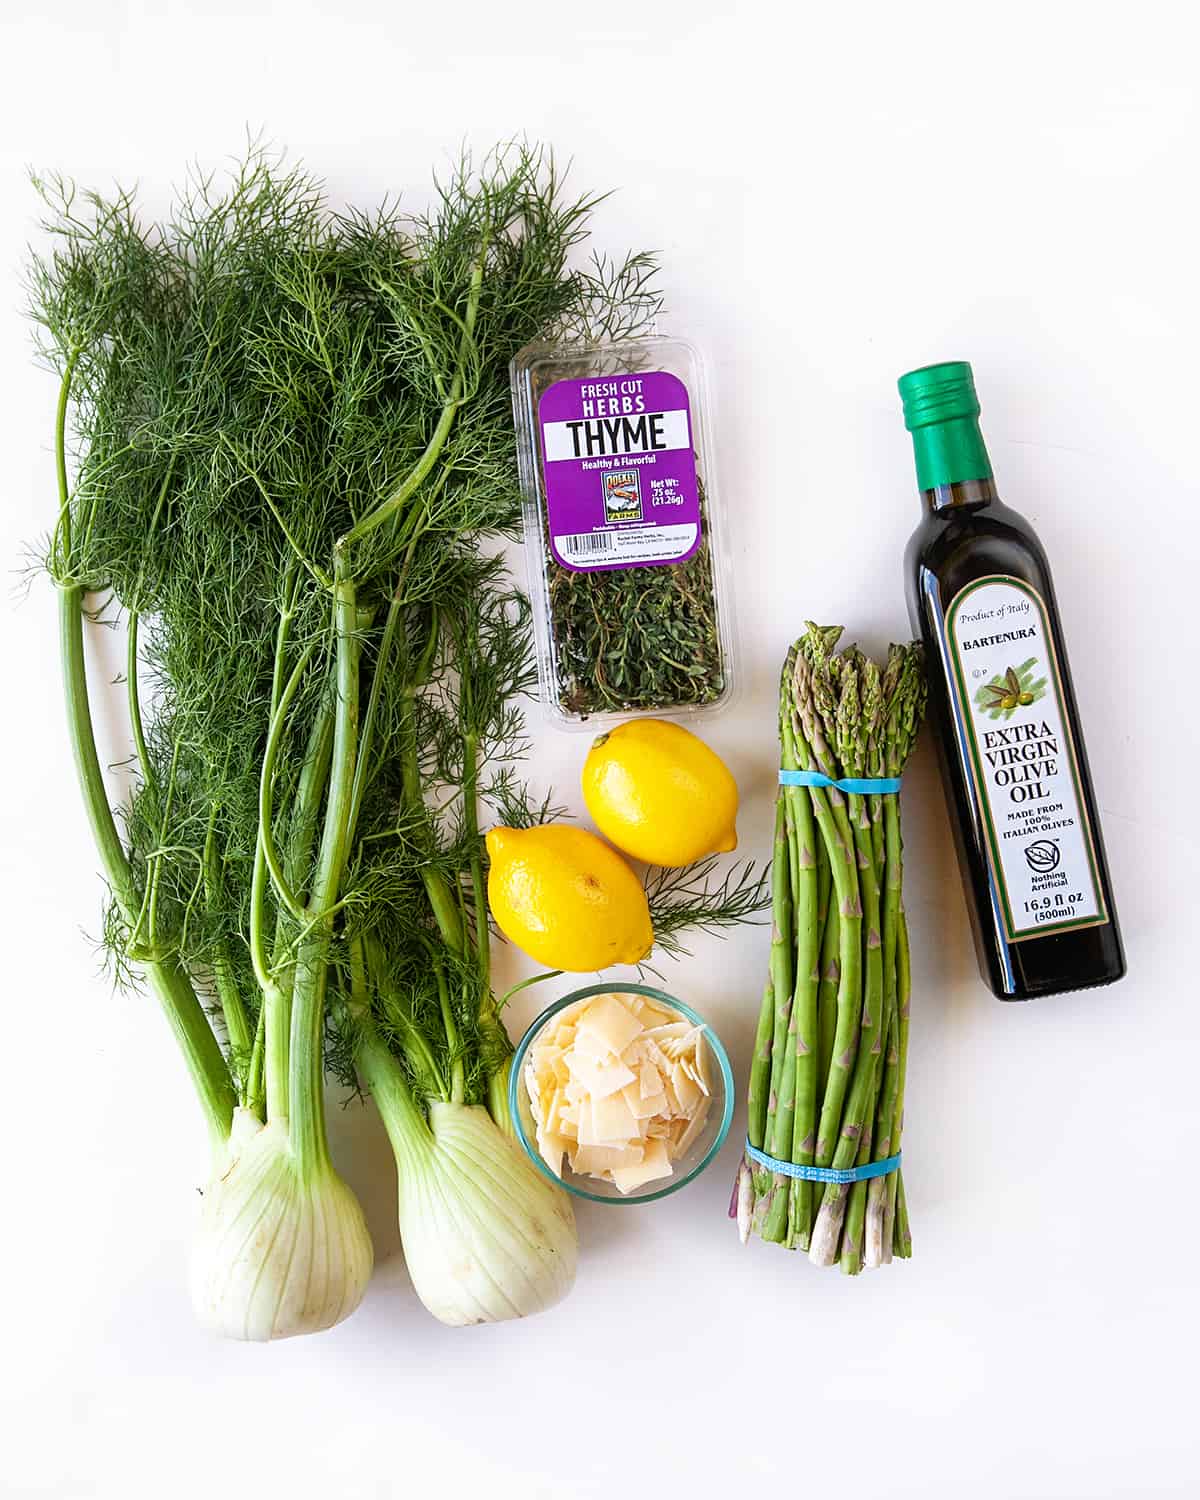 Ingredients for Fennel Asparagus Salad